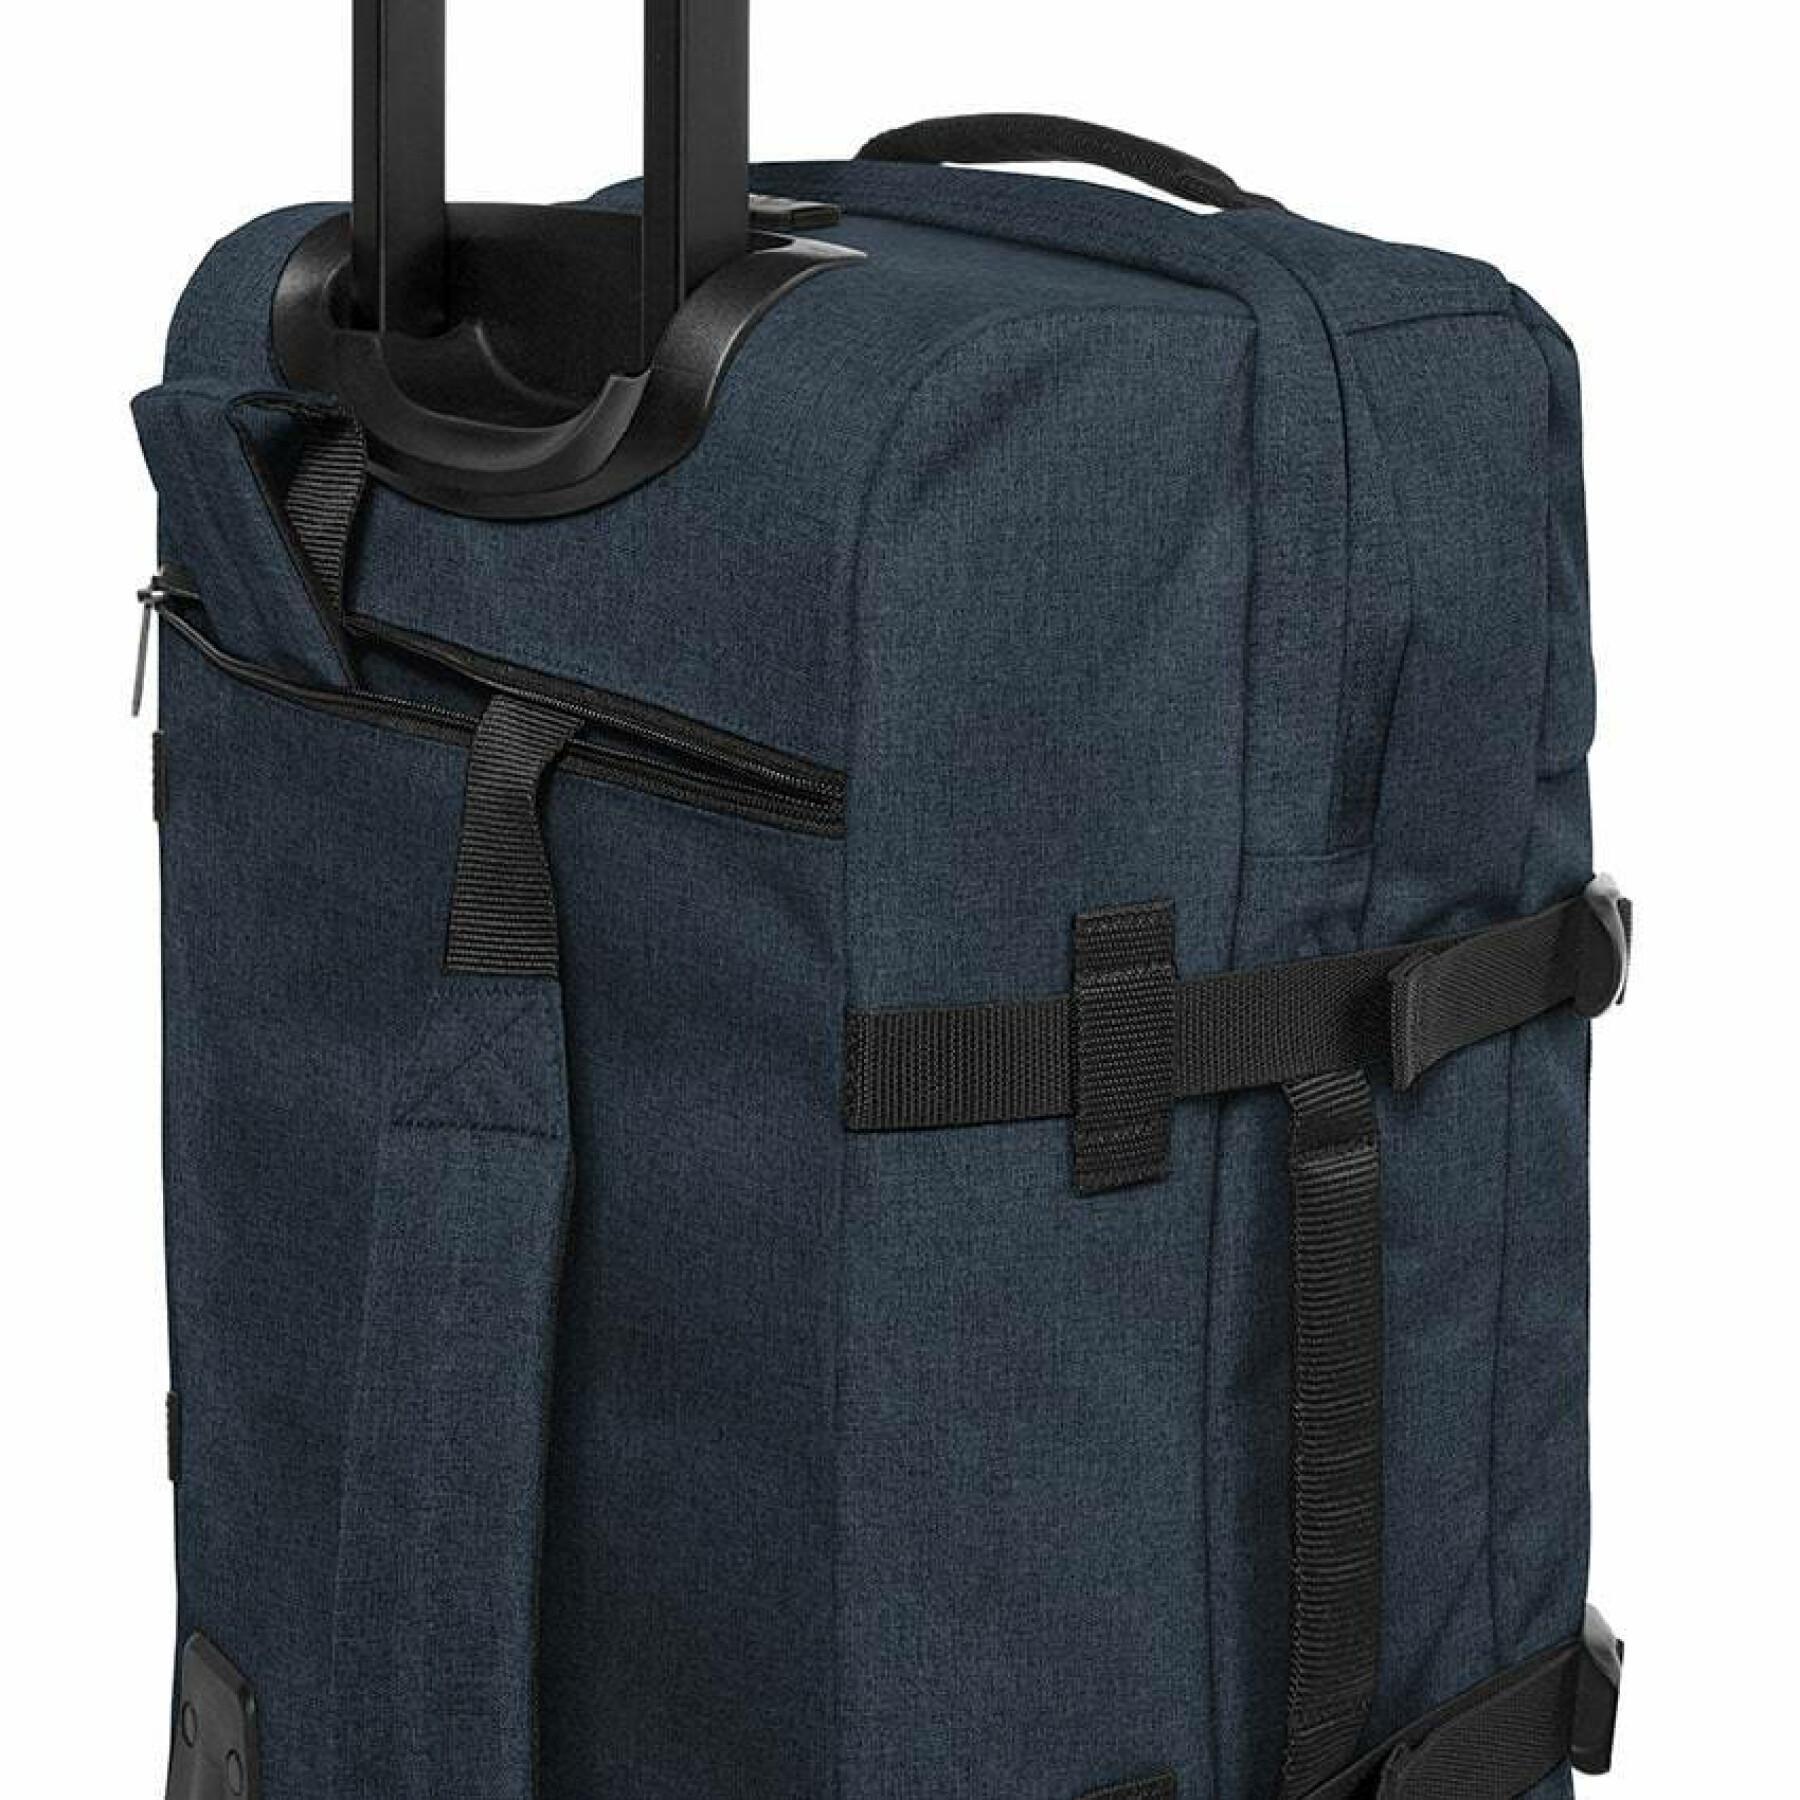 Travel bag Eastpak Strapverz M